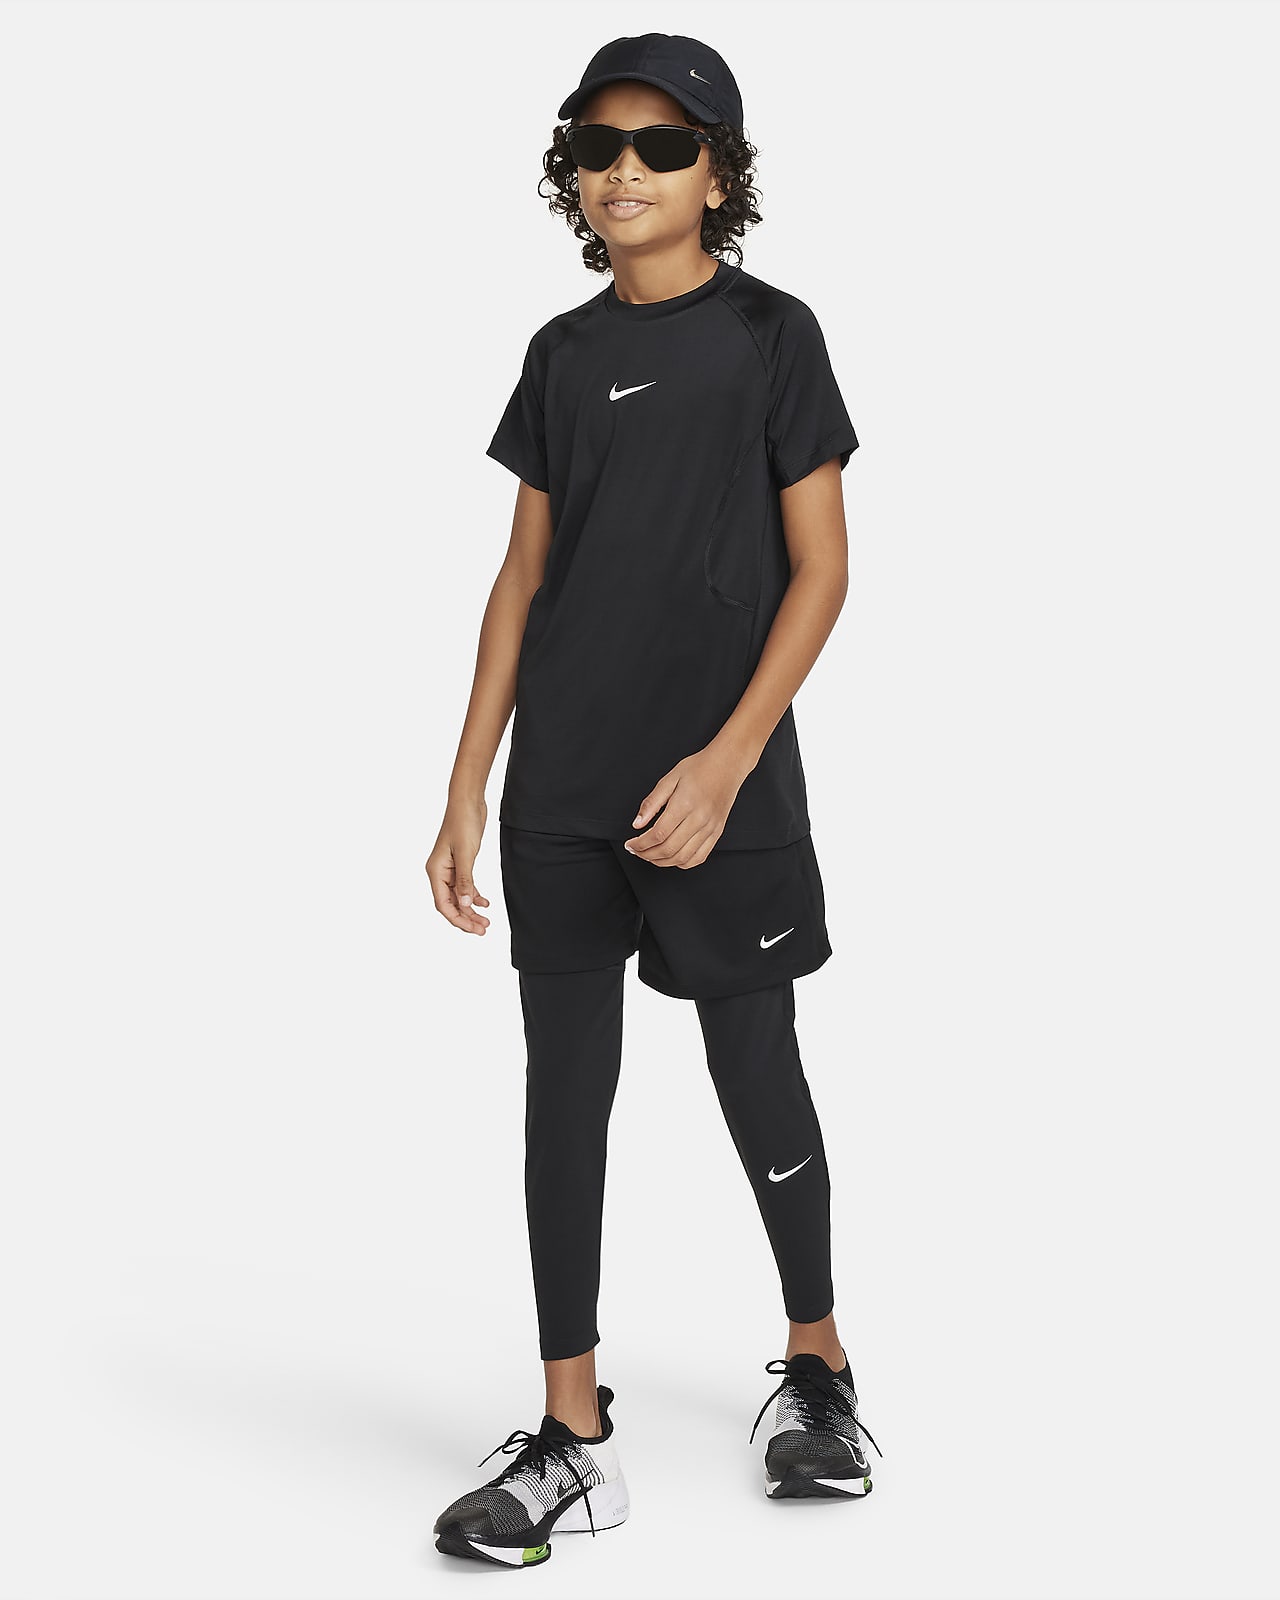 Nike Yoga Zenvy Dri-FIT low impact 7/8 leggings in black